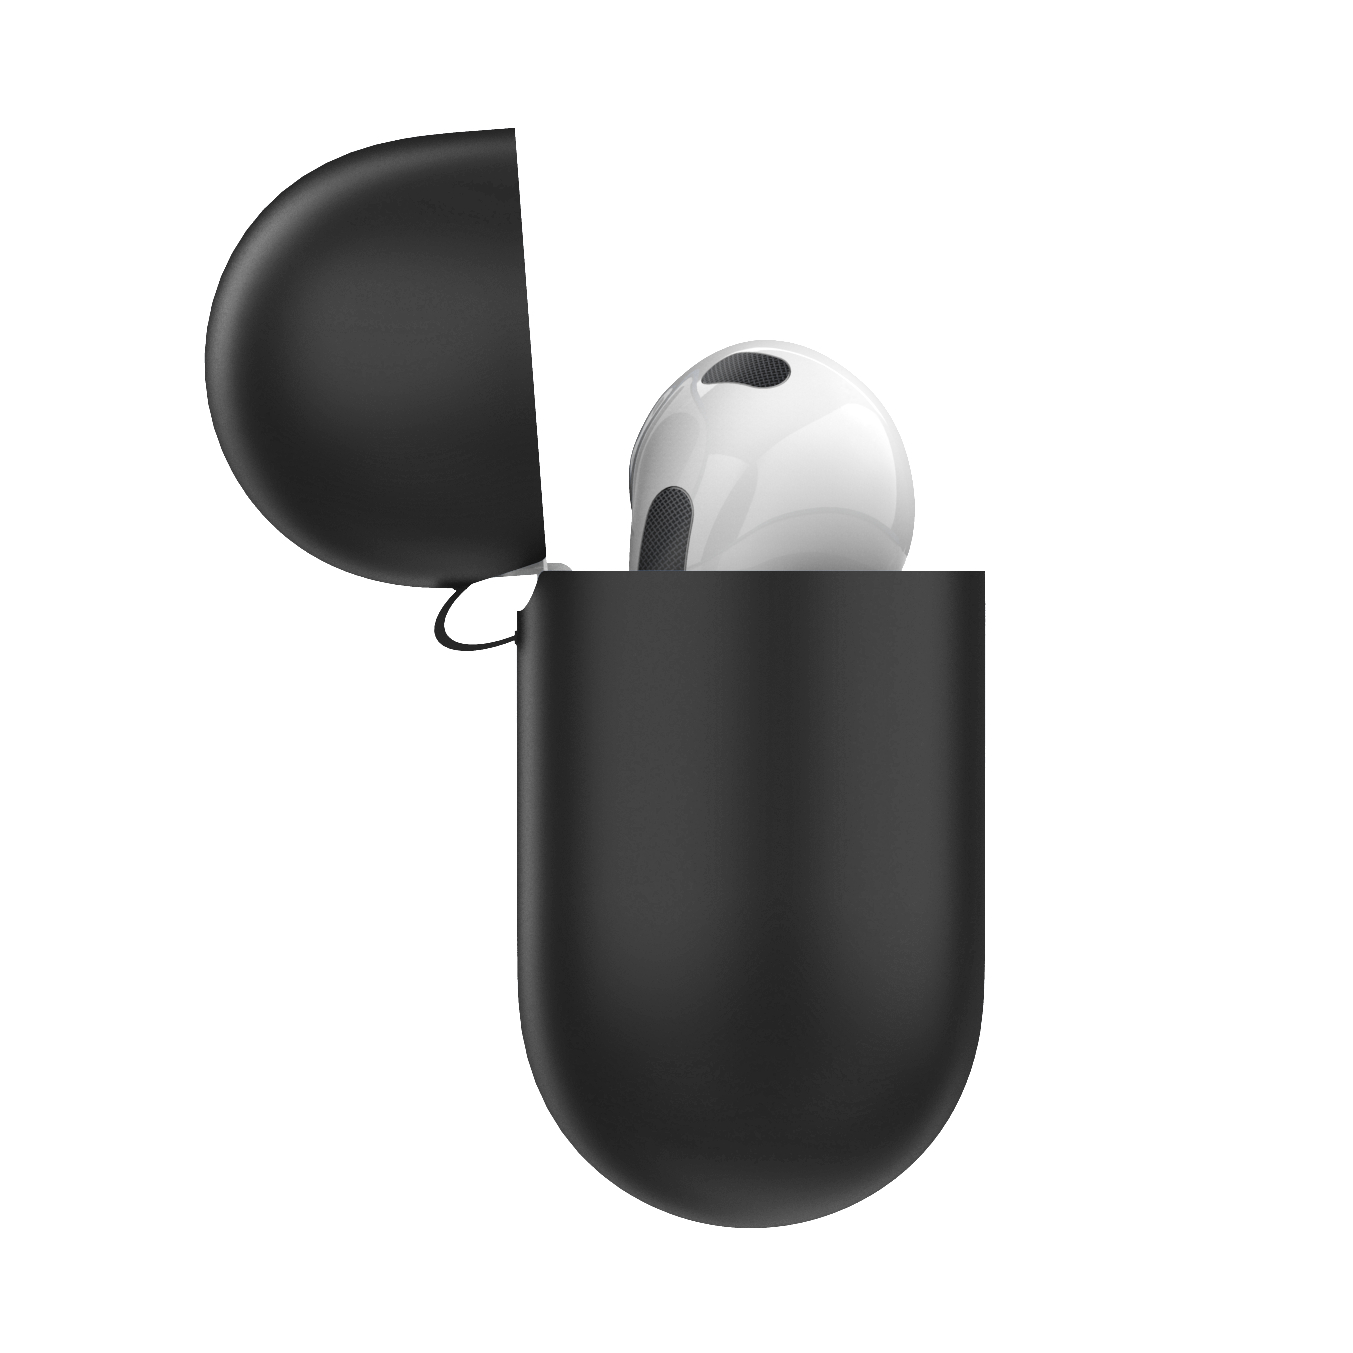 KEYBUDZ Elevate Apple mit Schutzhülle für AirPods Karabiner 3 Schutzcase